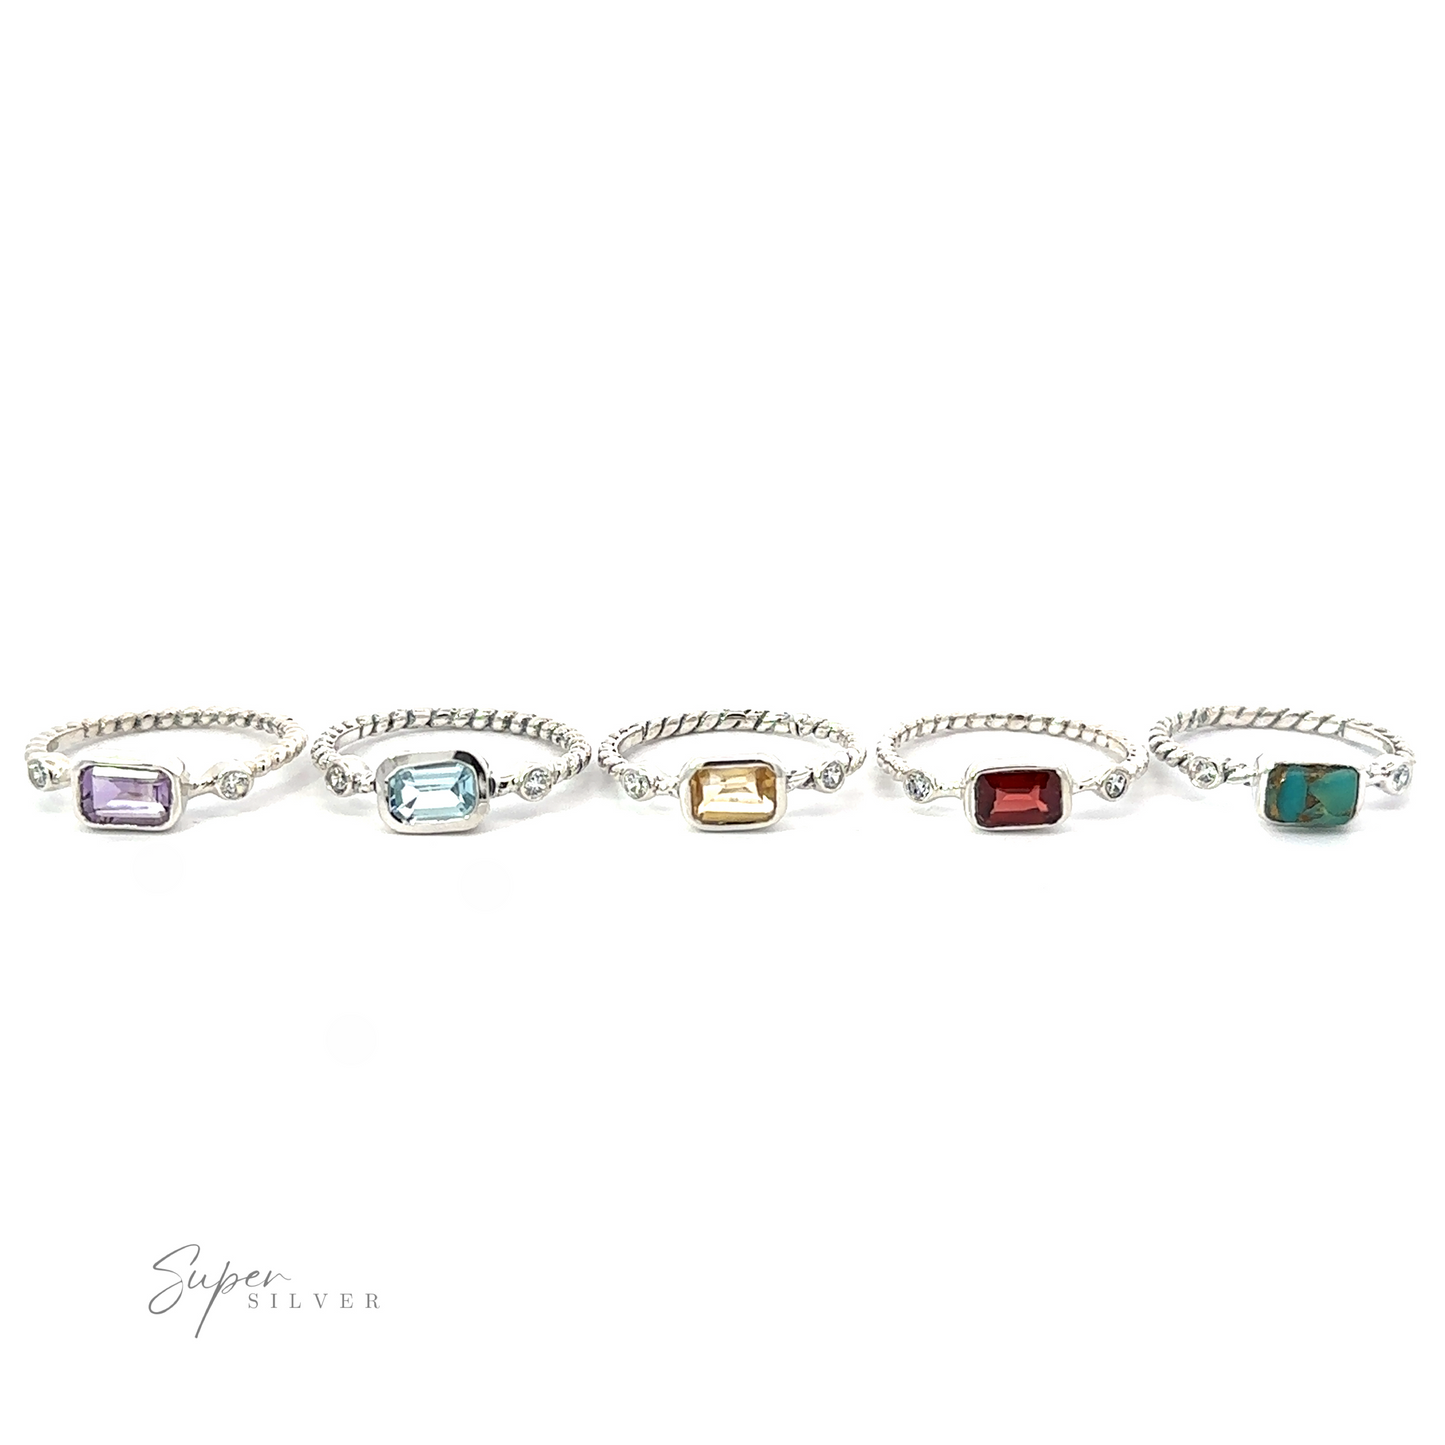 Five silver bracelets with various colored rectangular gemstones, each bracelet linked together, displayed on a white background, exuding sparkling sophistication.